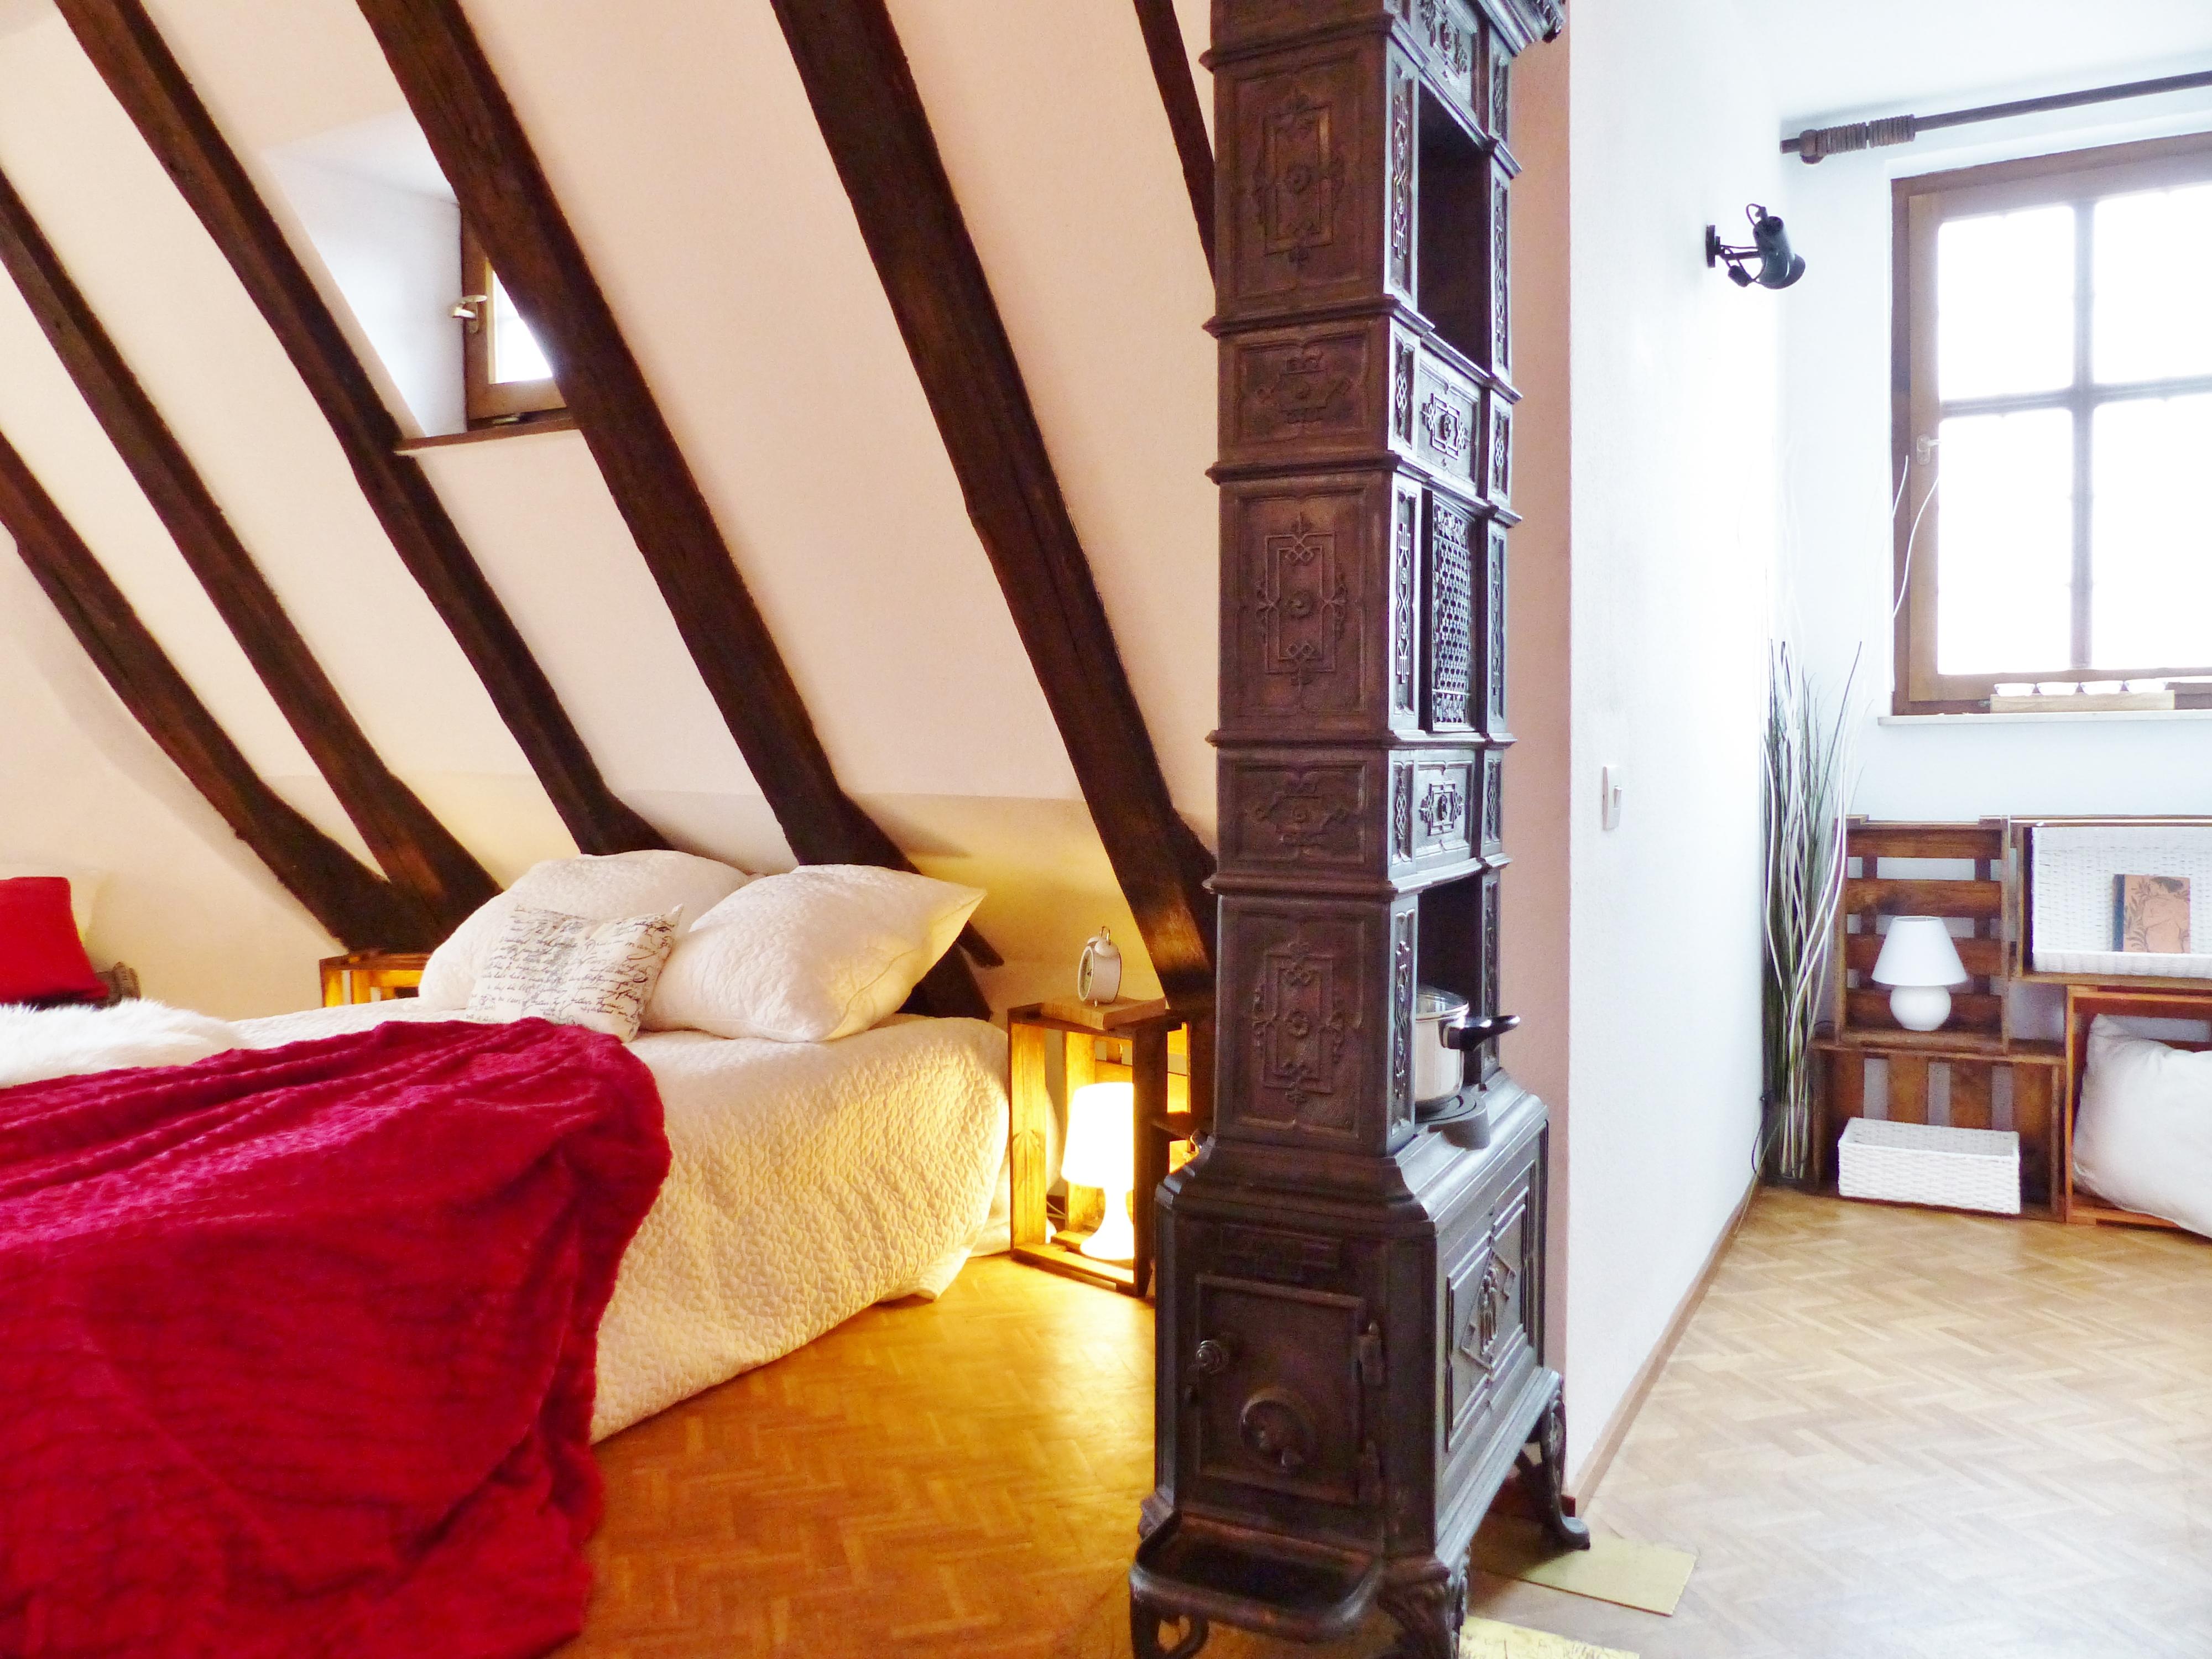 Schlafzimmer in gemütlicher Burgwohnung #einrichtungsberatung ©Immobilien Podium